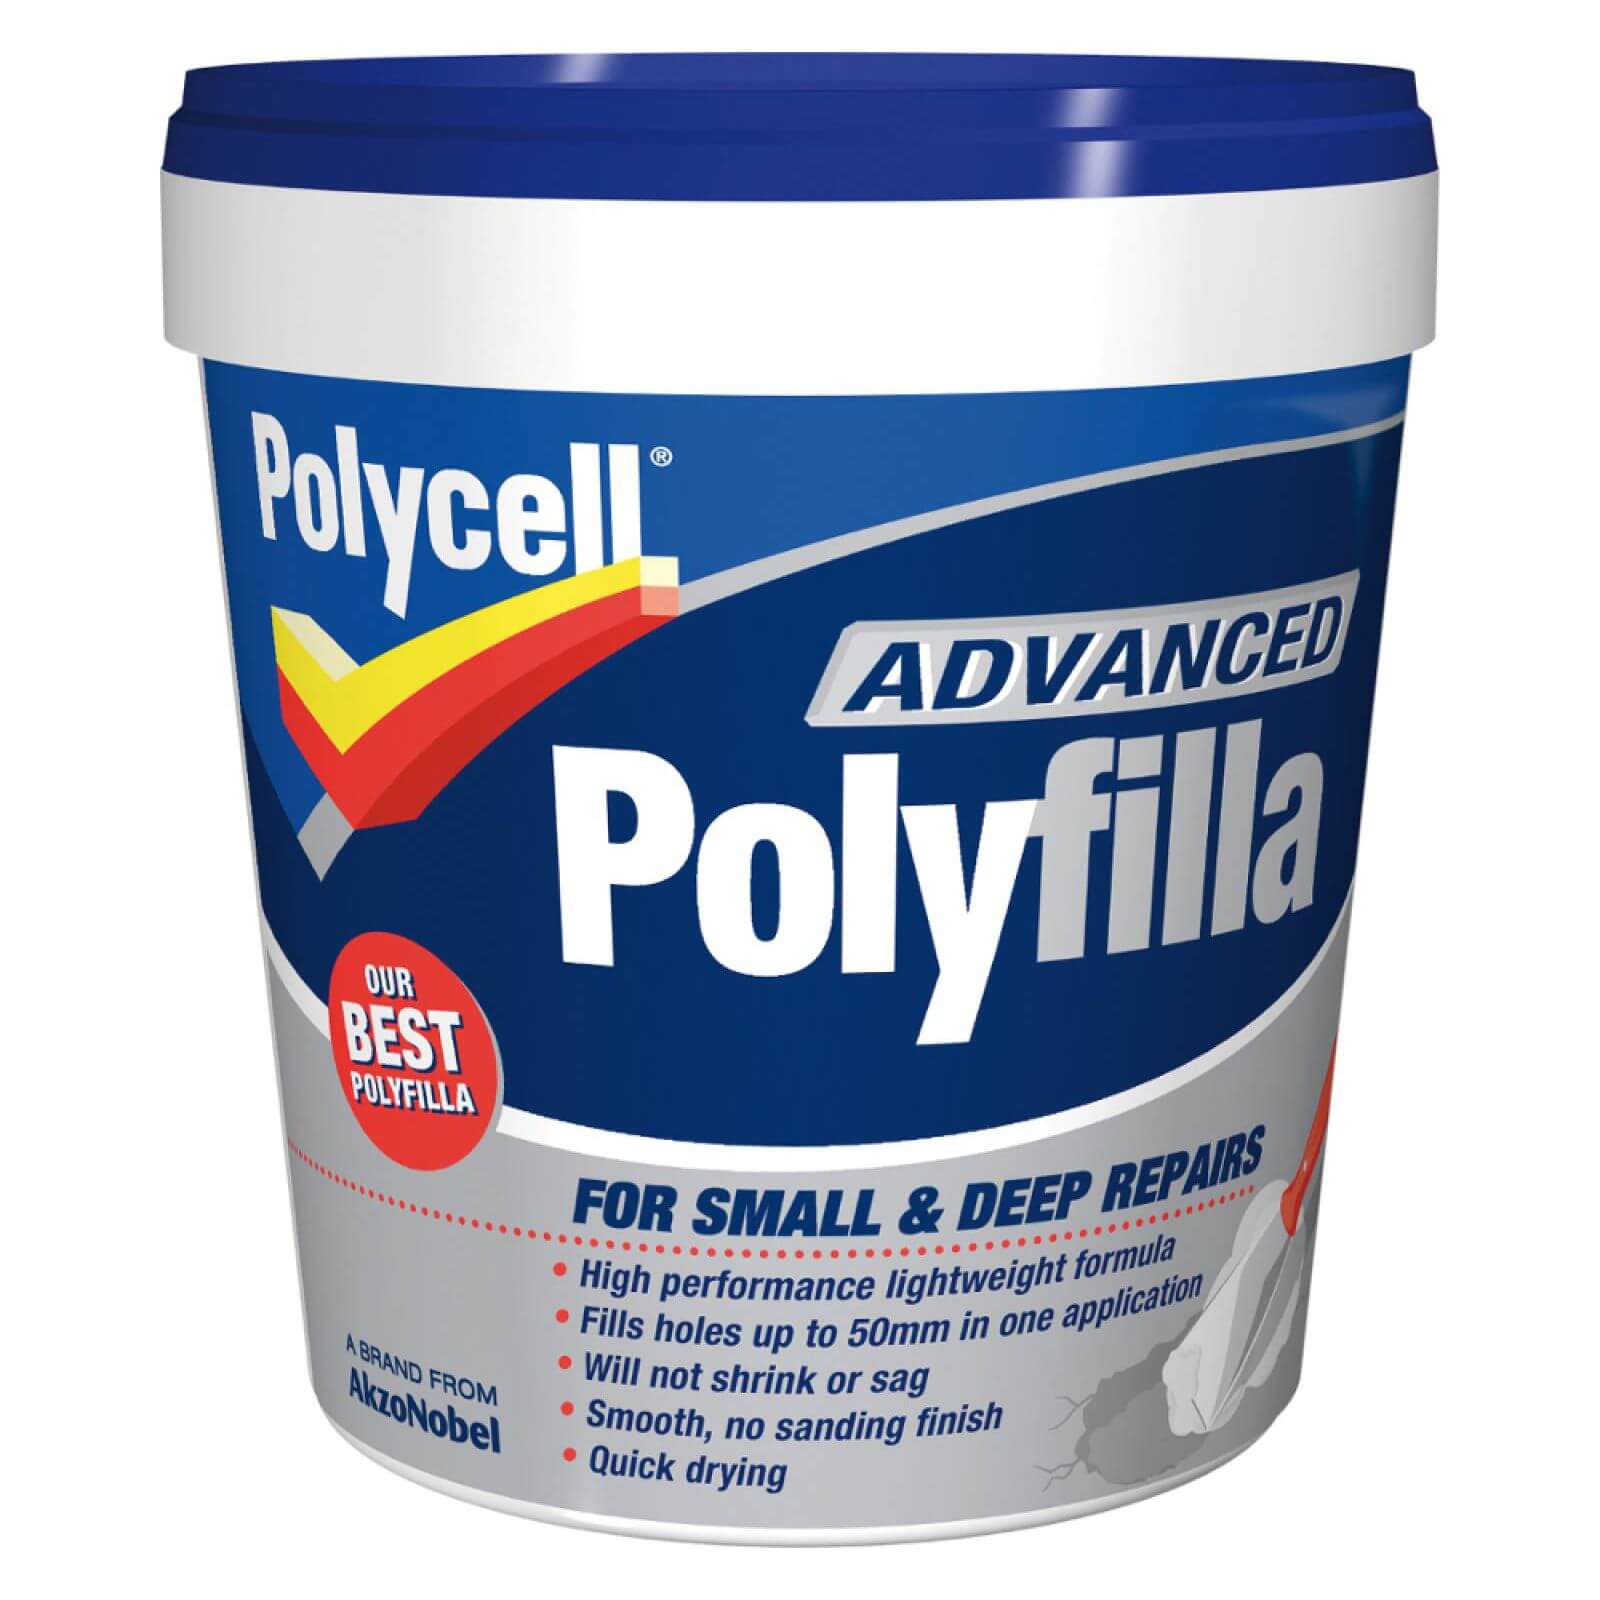 Polycell Advanced Polyfilla - 600ml